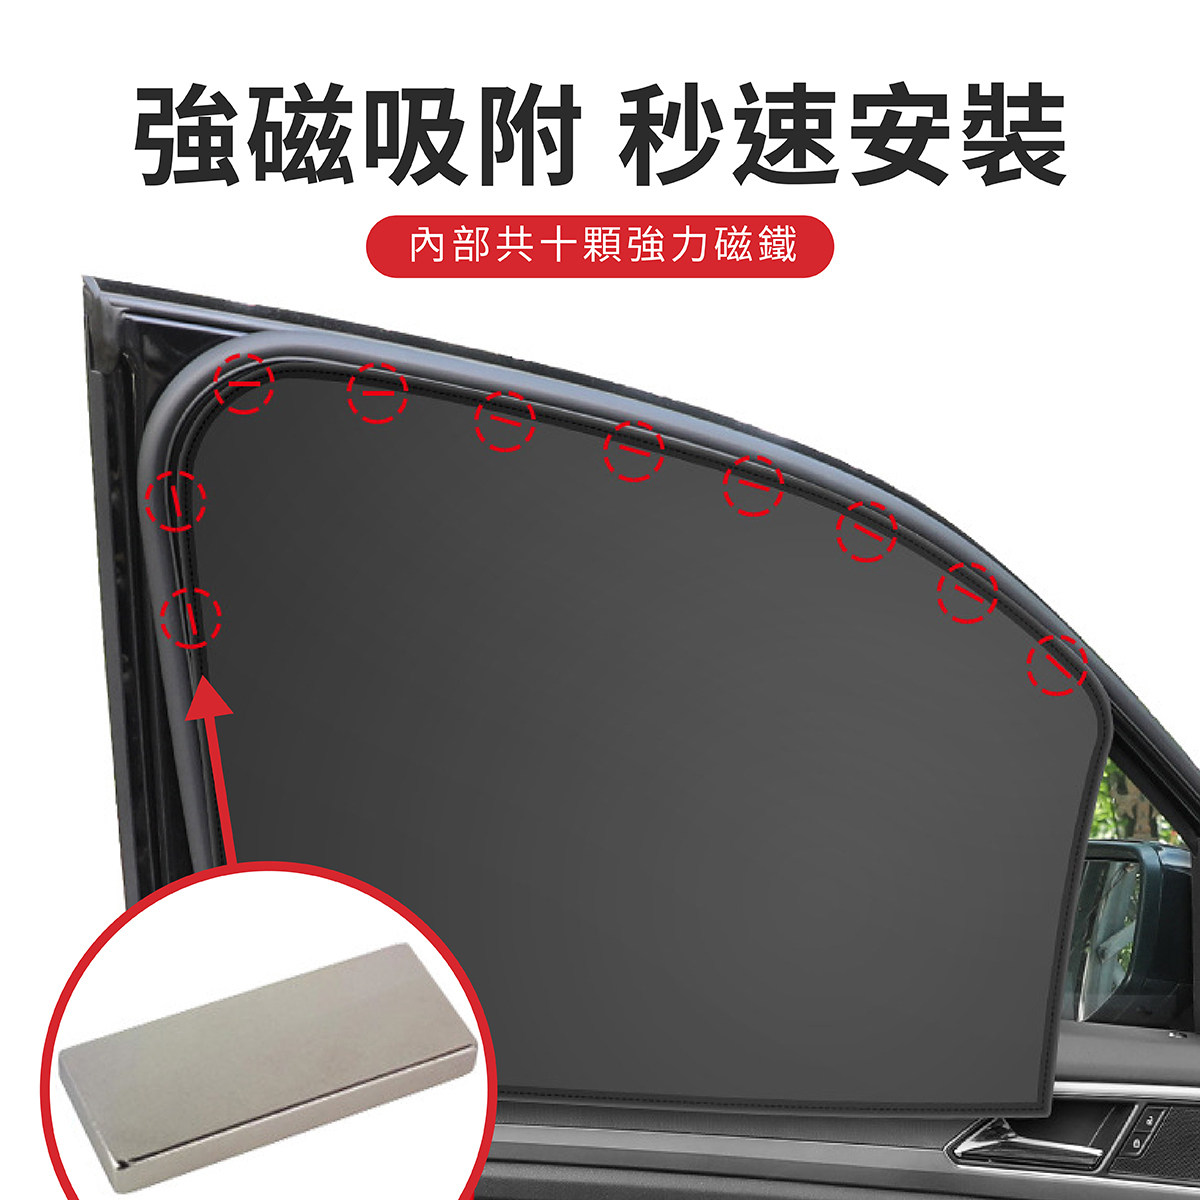 FORD KUGA MK3 專用磁吸式遮陽簾磁吸式車用遮陽防曬簾遮陽簾窗簾配件